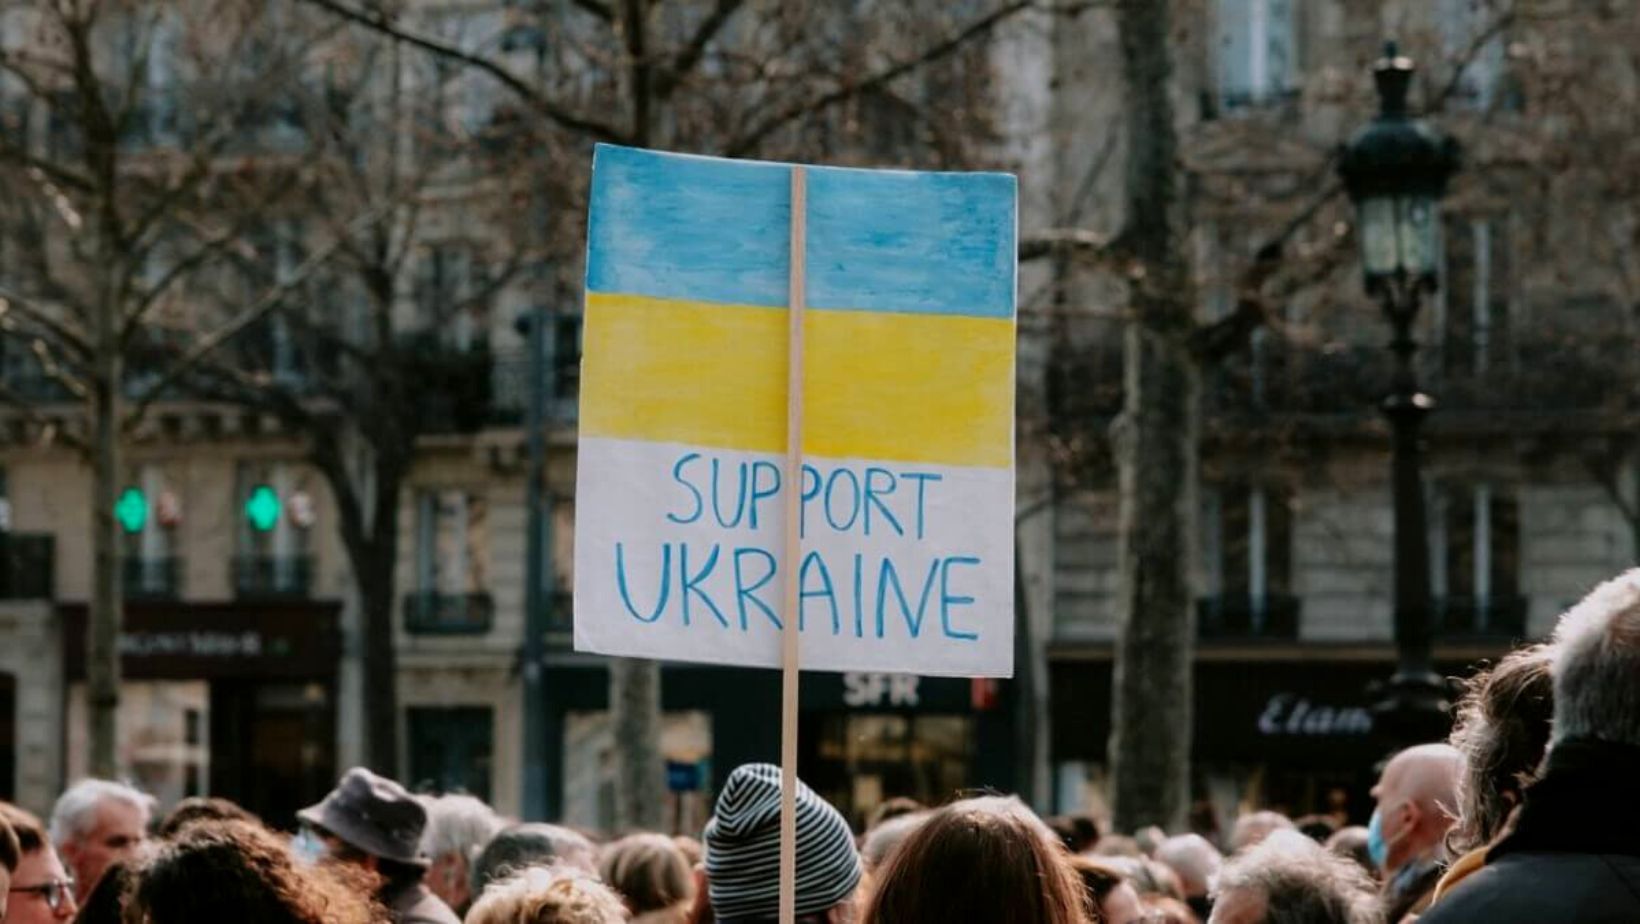 Průzkum ukázal, že 60 % Čechů nadále podporuje přijímání ukrajinských uprchlíků